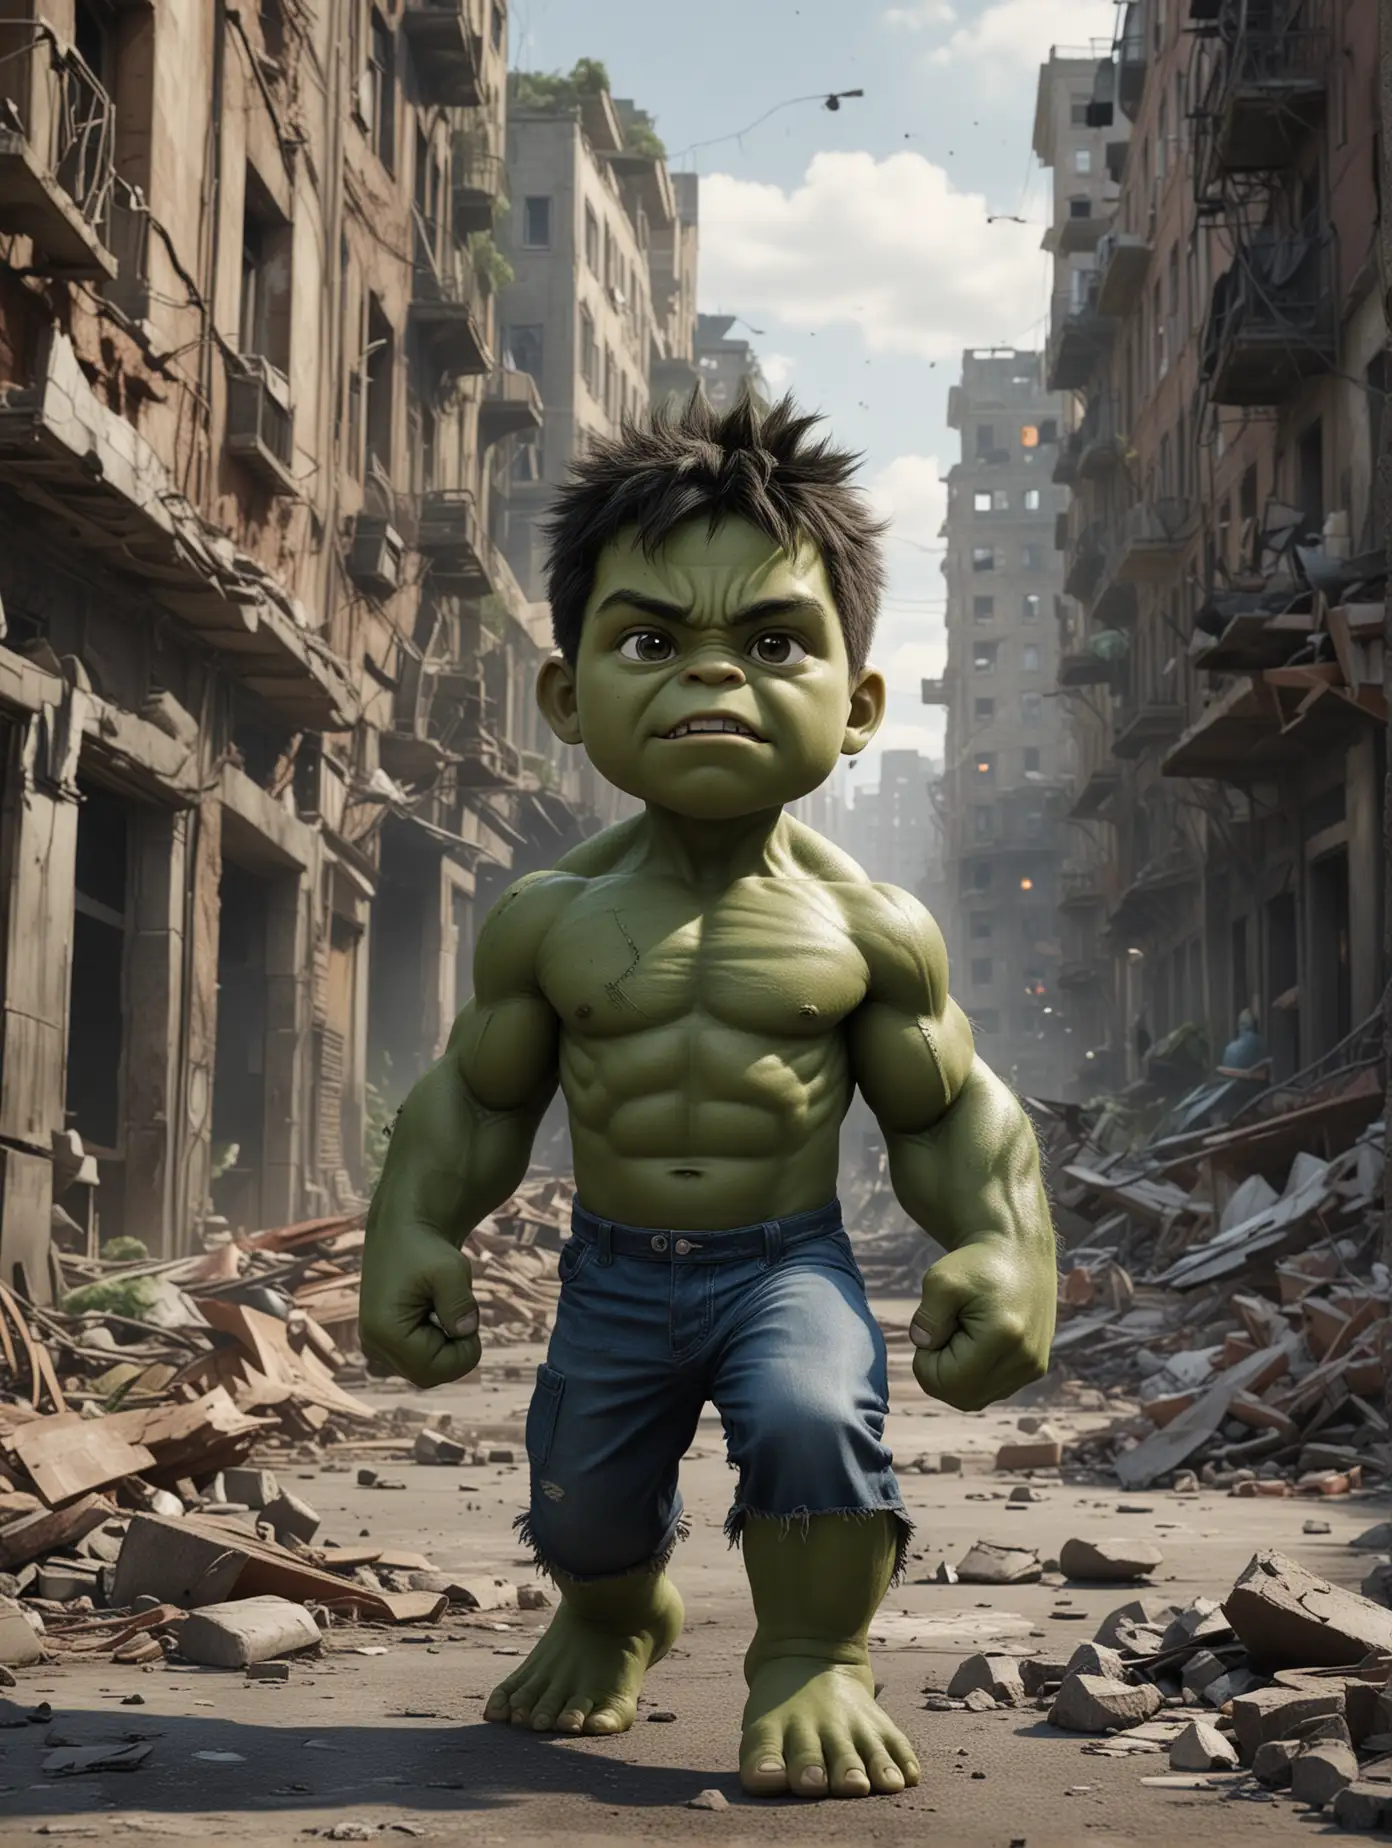 Créame a un niño de 7 años transformado en Hulk en medio de una ciudad destruida creando una escena cinematográfica muy potente que transmita acción y fuerza. El estilo es híper realista 8k